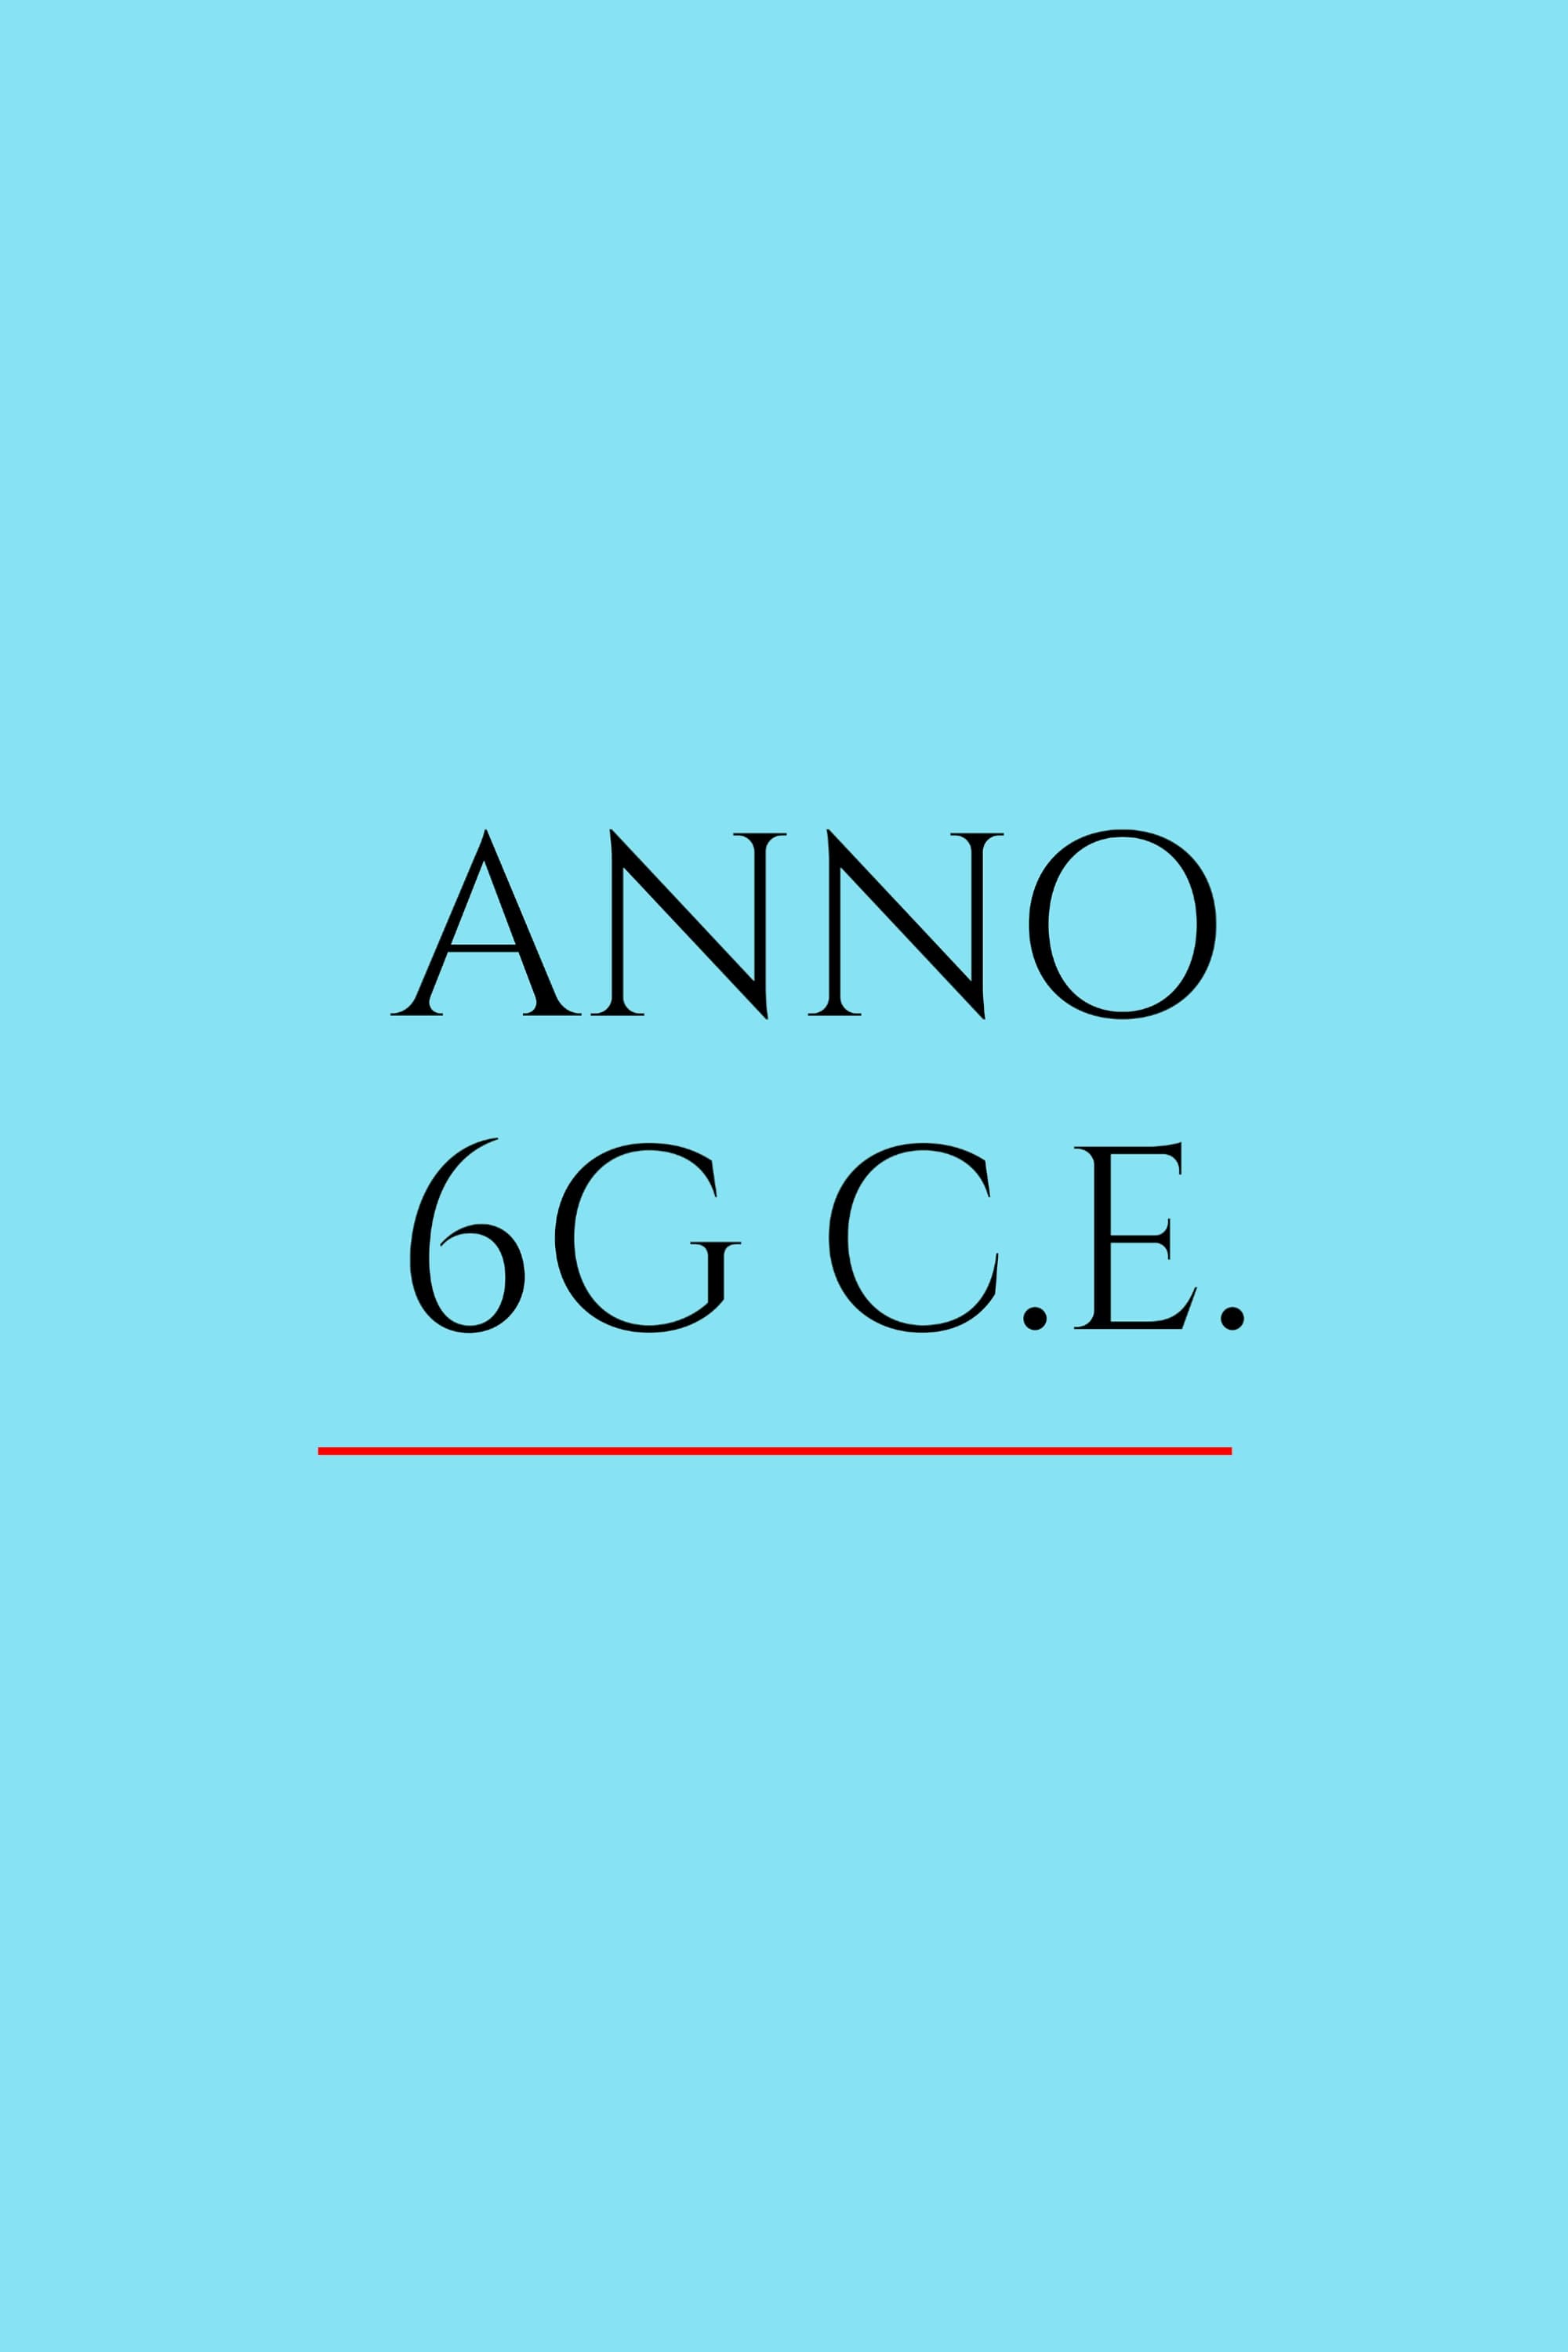 Anno 6G CE